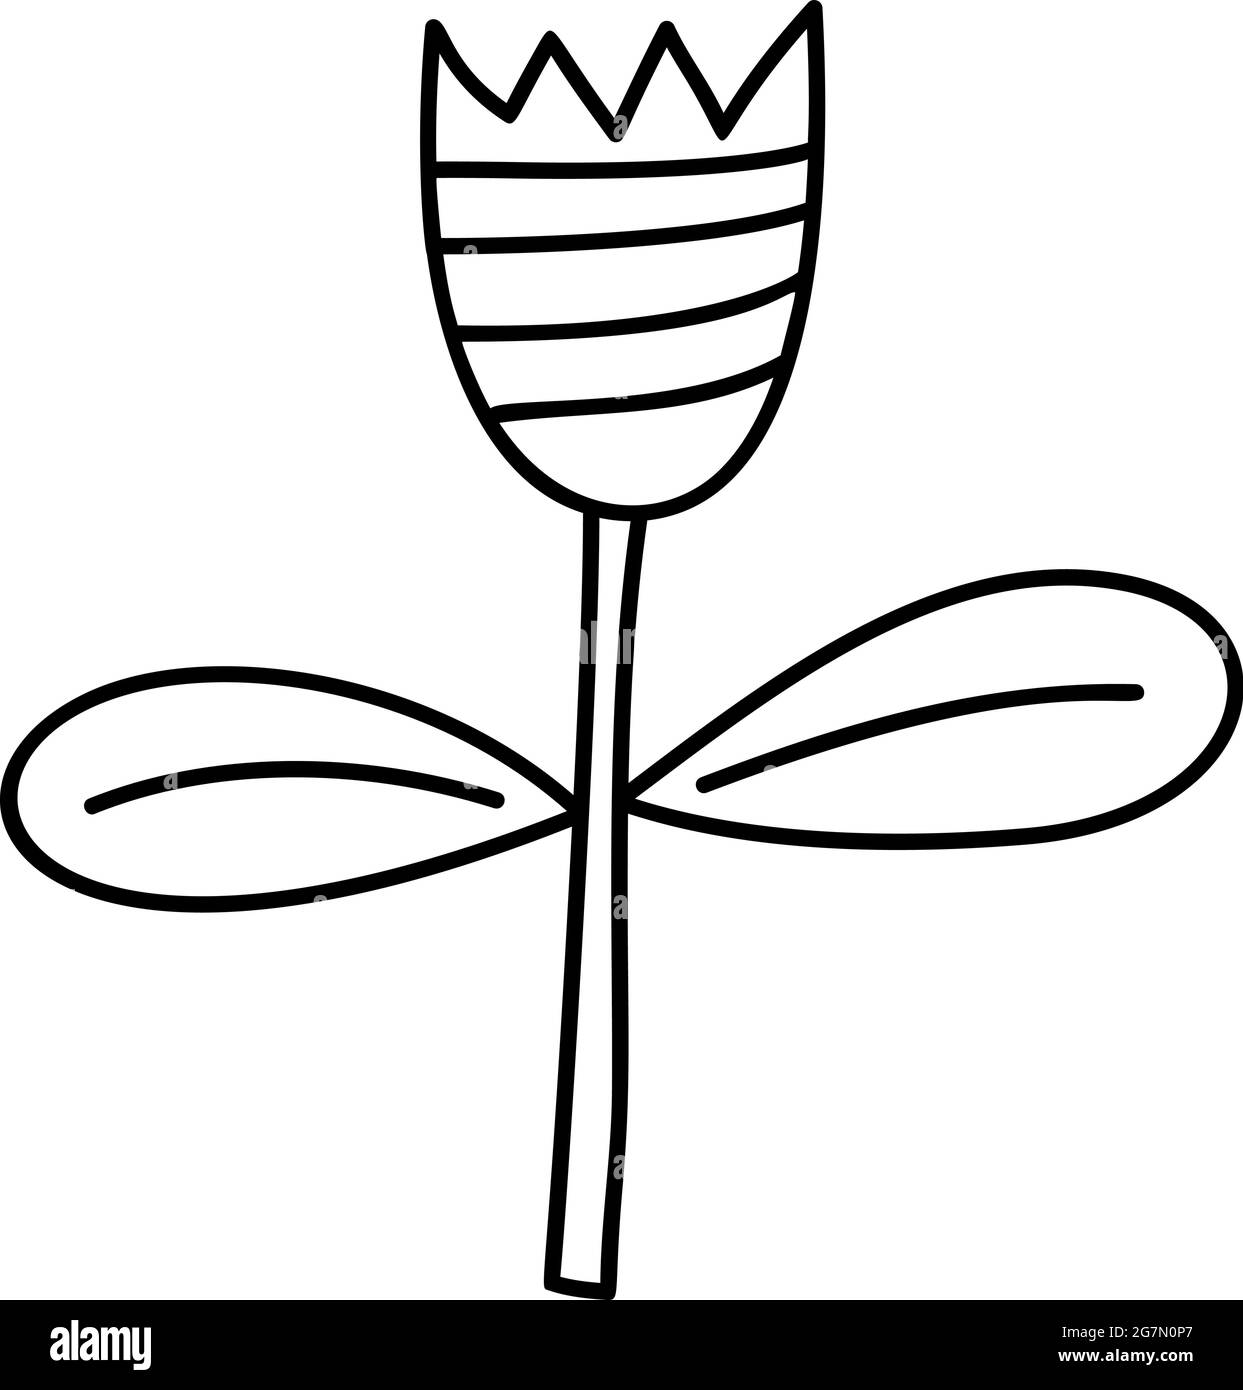 Fiore di primavera stilizzato vettoriale in stile monolino. Elemento grafico dell'illustrazione scandinava. Immagine floreale estate decorativa per il saluto Valentine Card Illustrazione Vettoriale